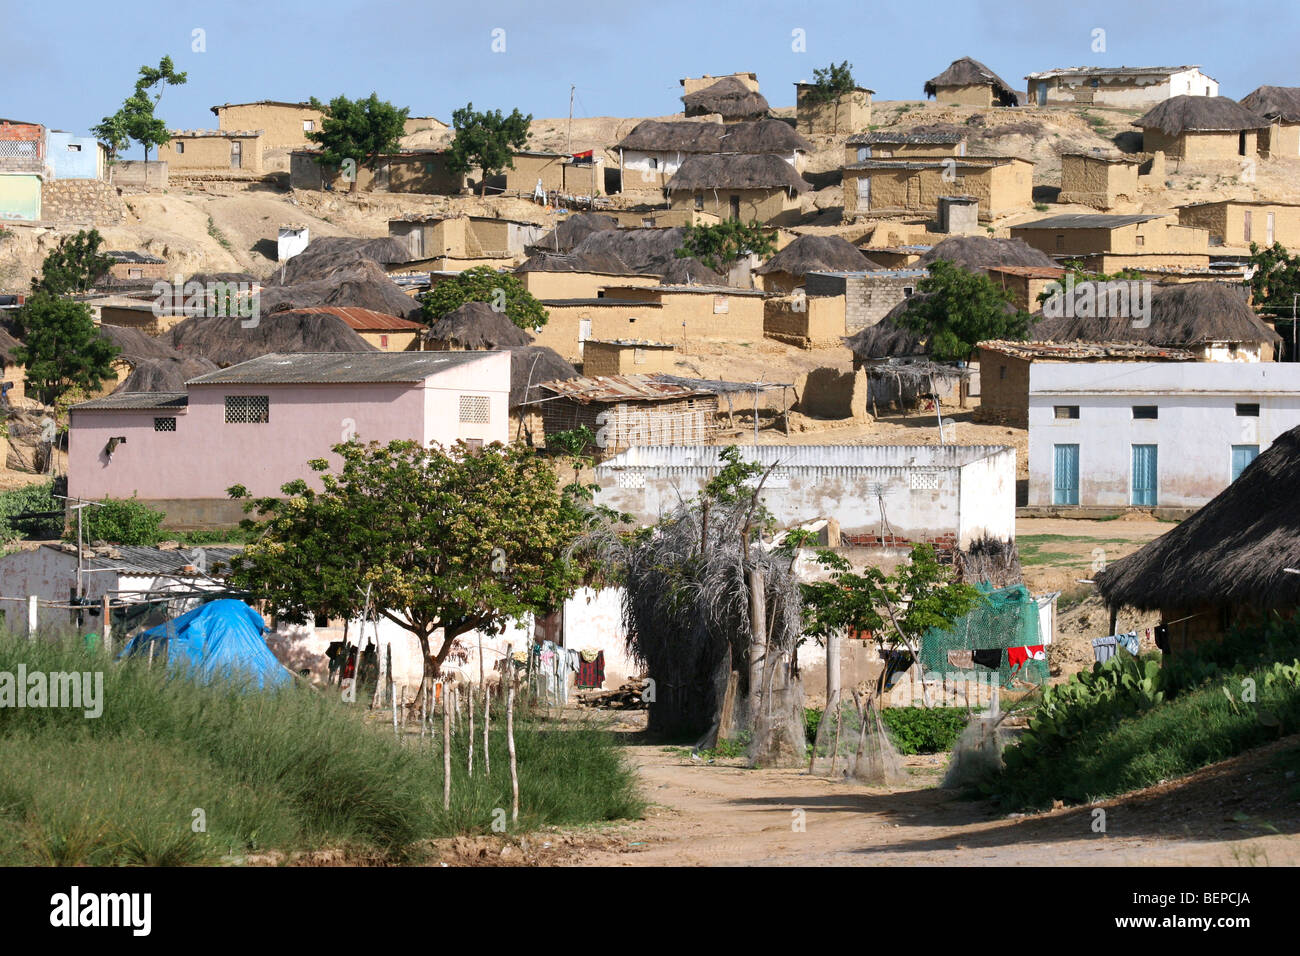 Image result for village in africa